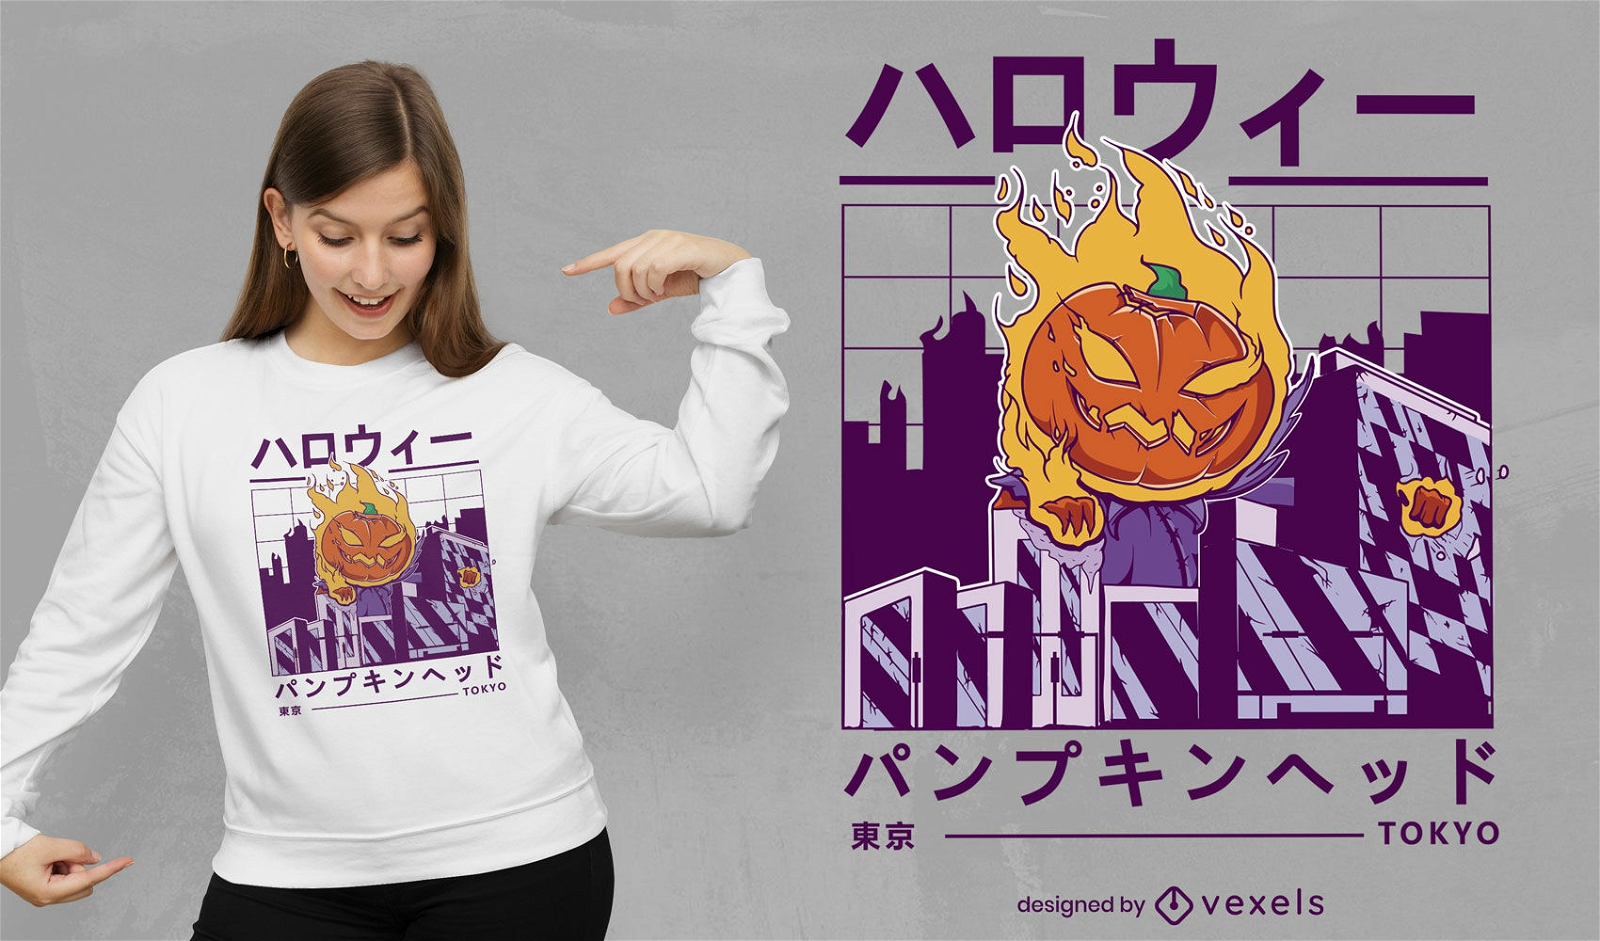 Calabaza de Halloween en dise?o de camiseta de la ciudad de vaporwave